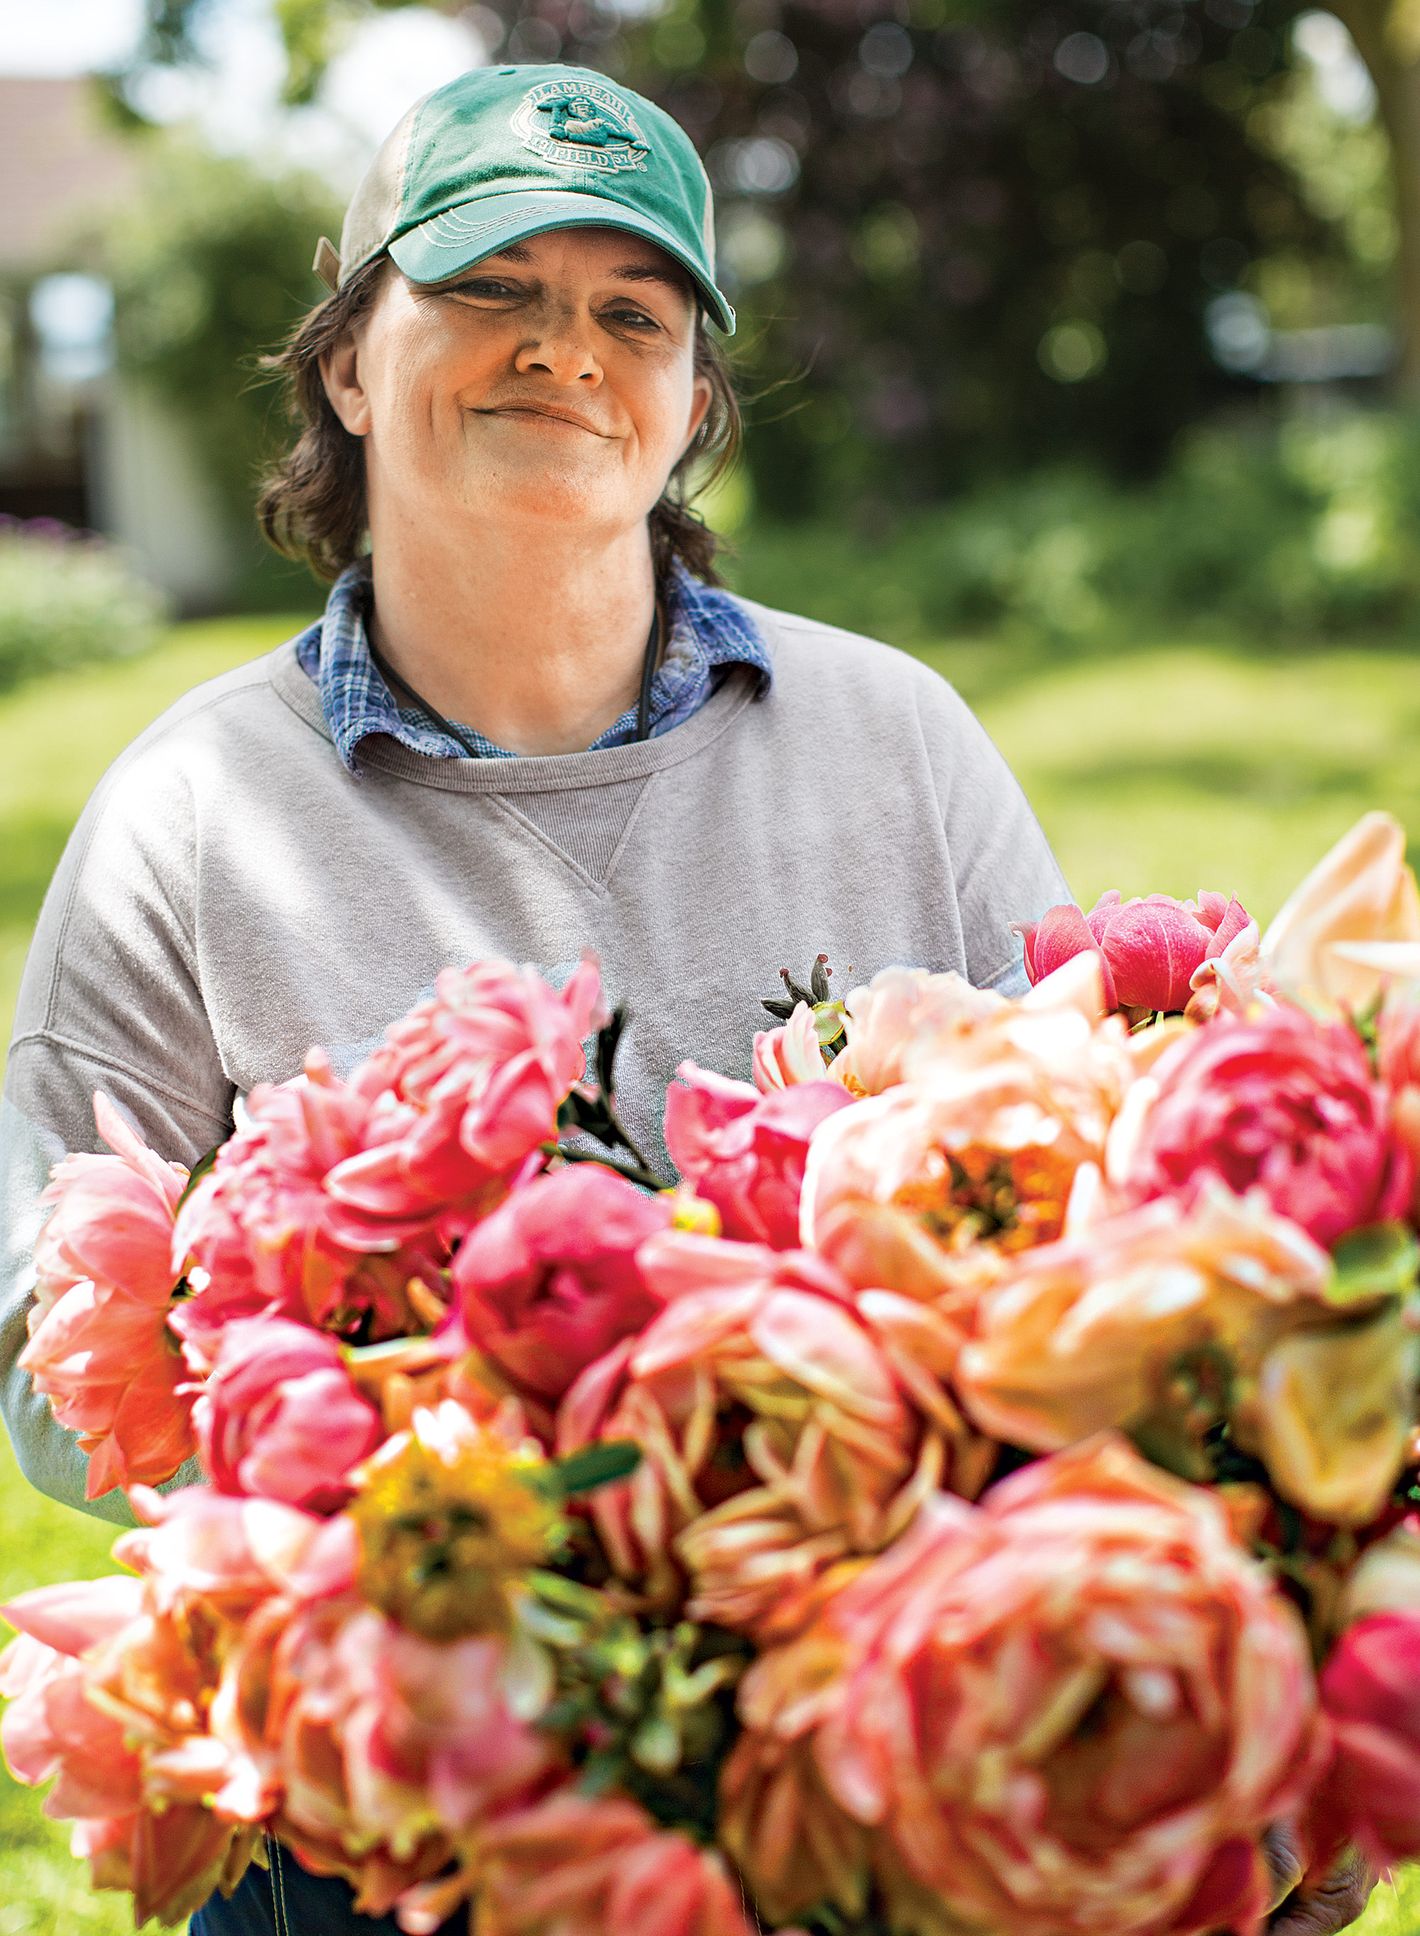 Making Market Bouquets - Floret Flowers